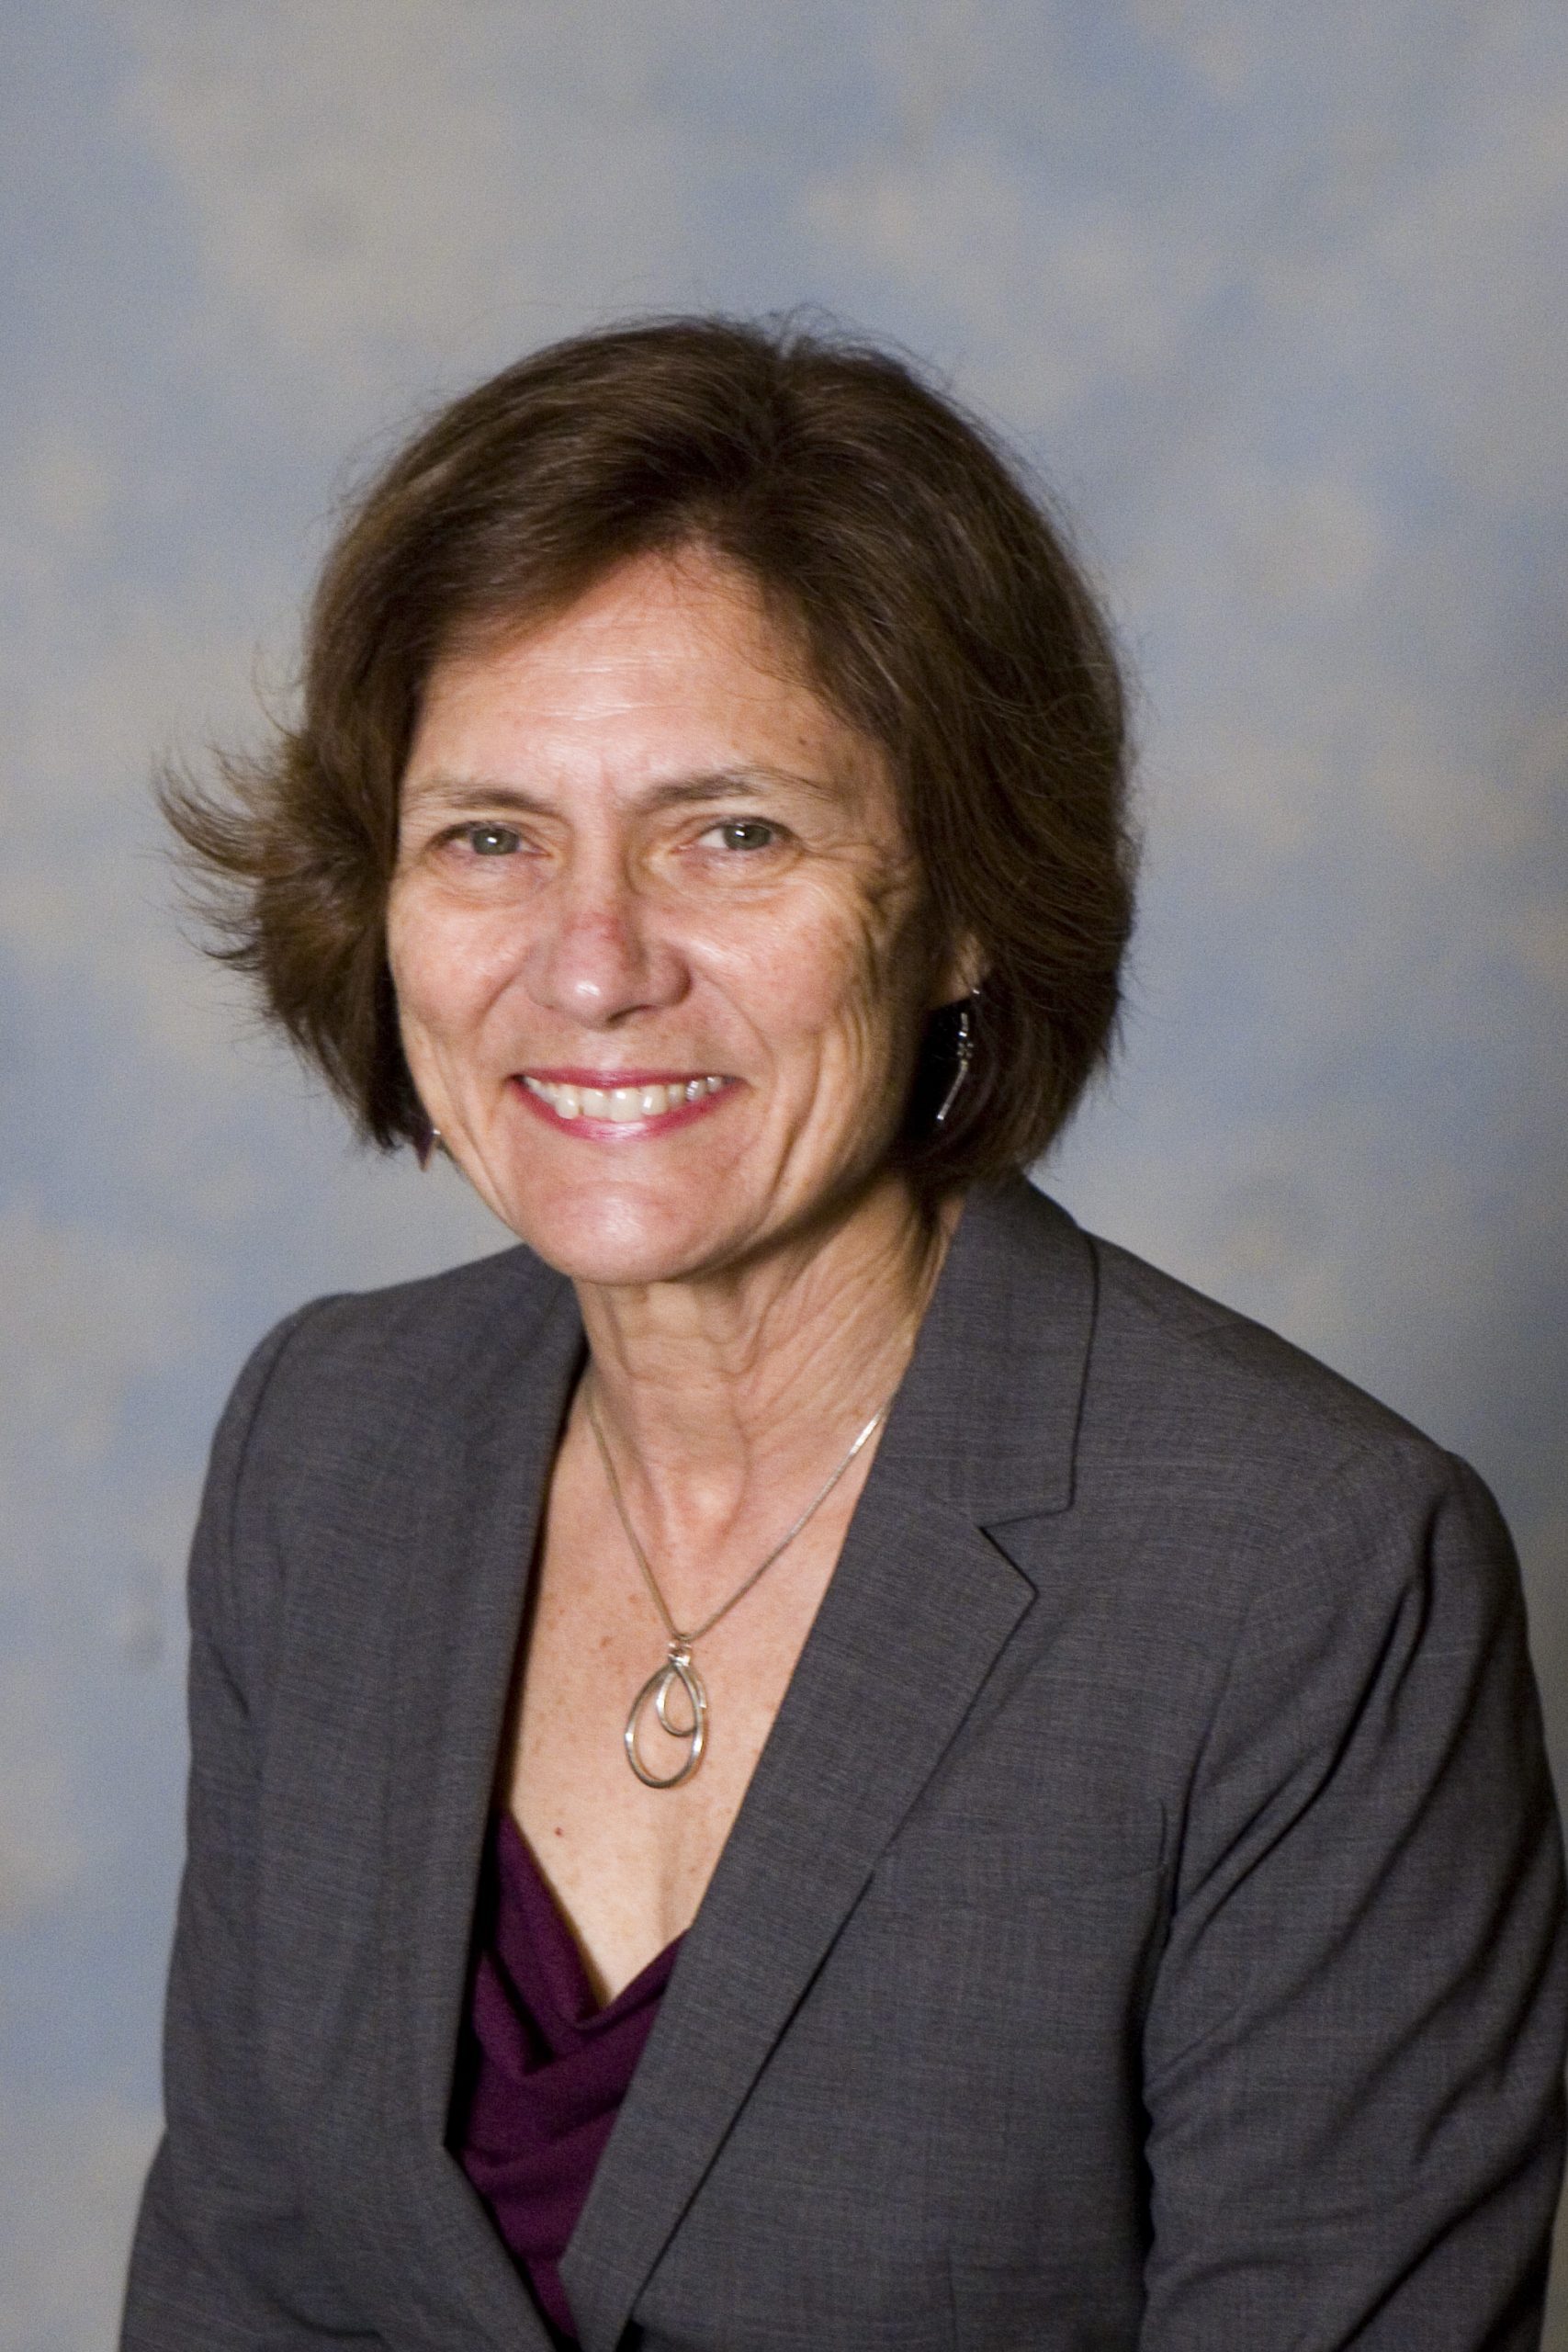 Andrea Tenner, PhD